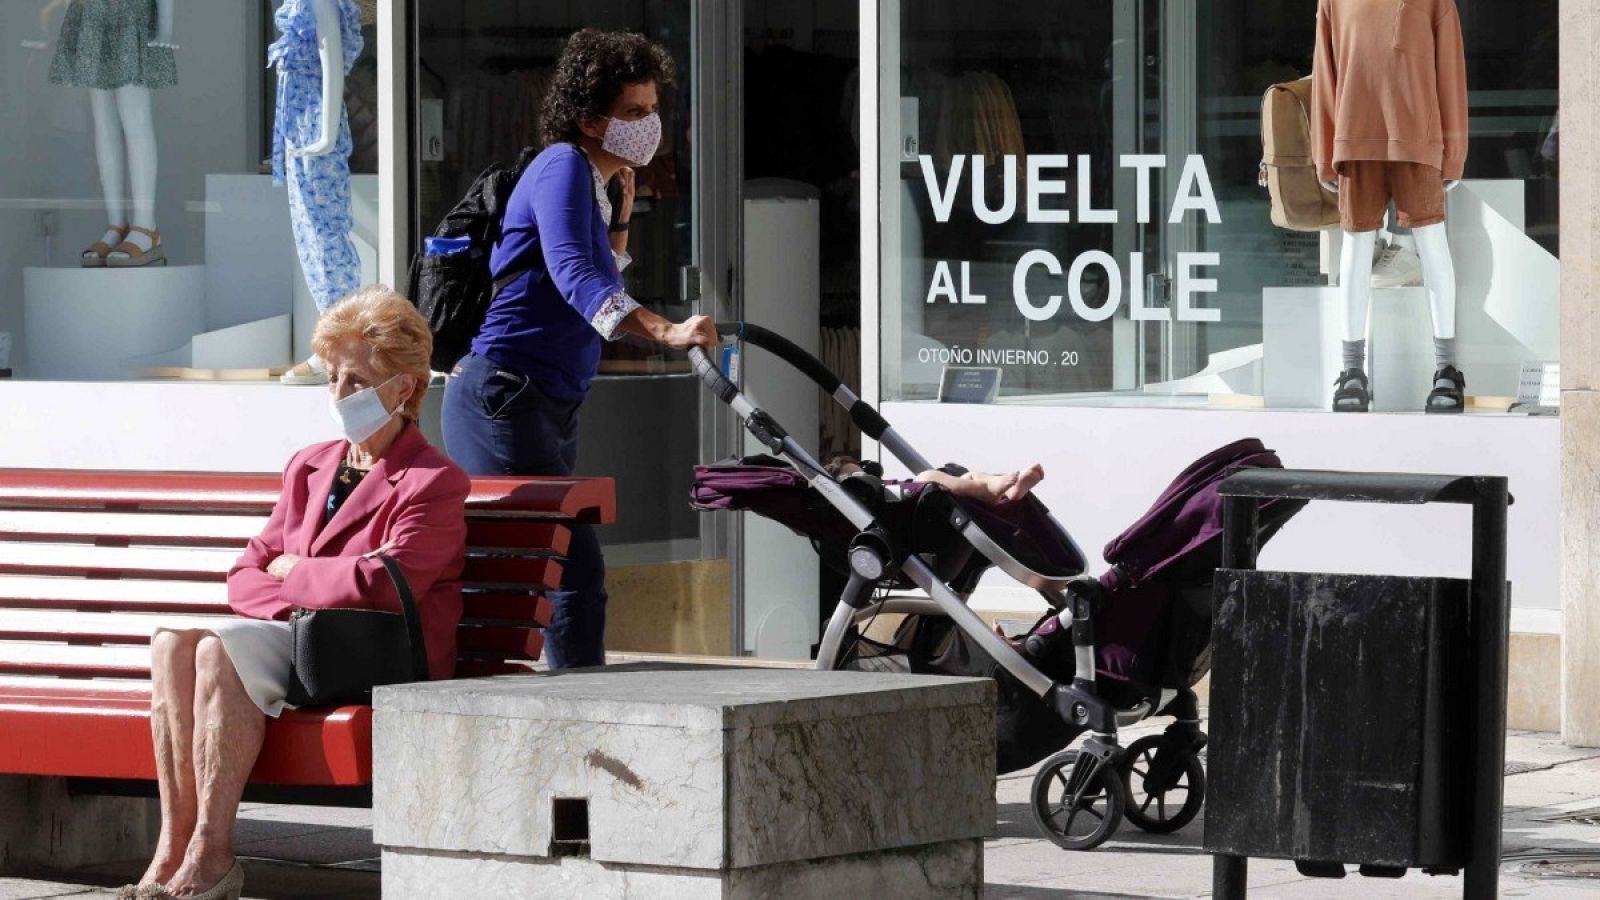 Una mujer camina frente a un escaparate con la campaña de la vuelta al colegio en una calle del centro de Oviedo